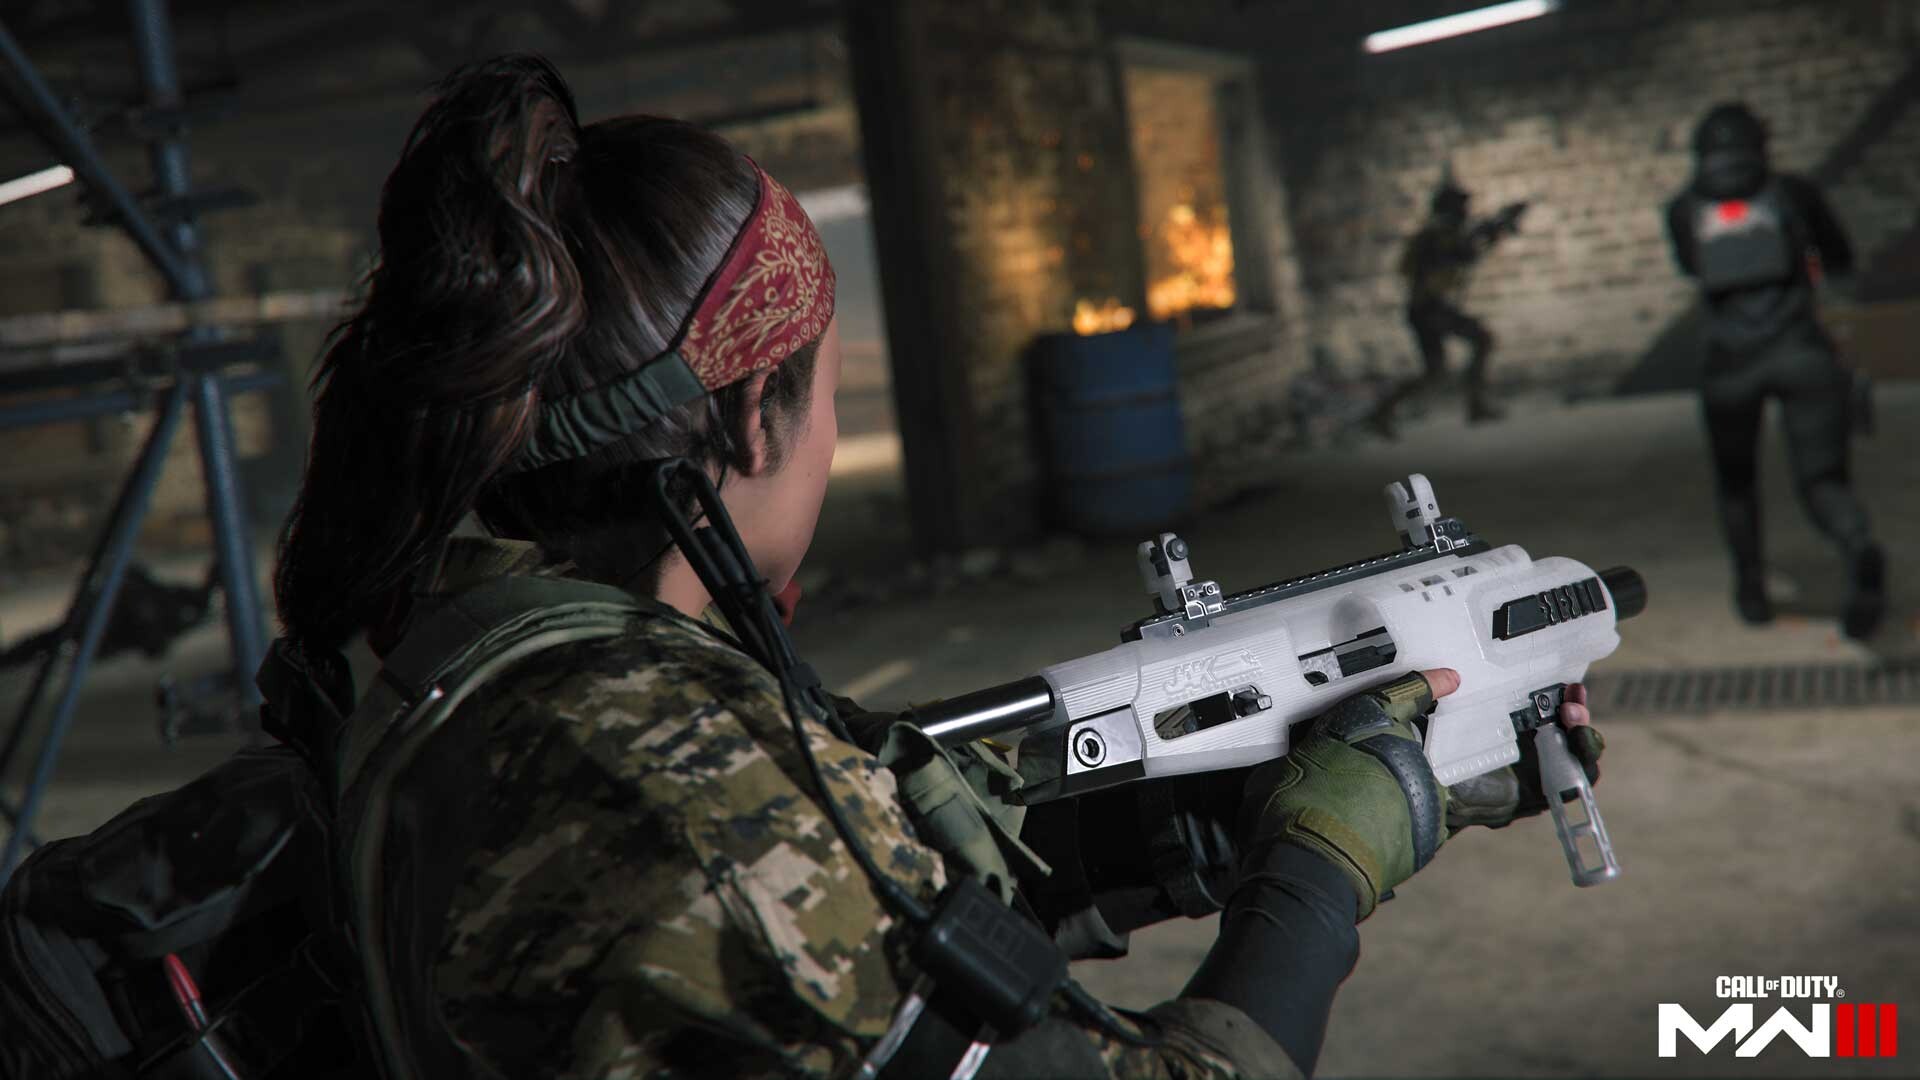 Call of Duty 2022 game announced as Modern Warfare 2